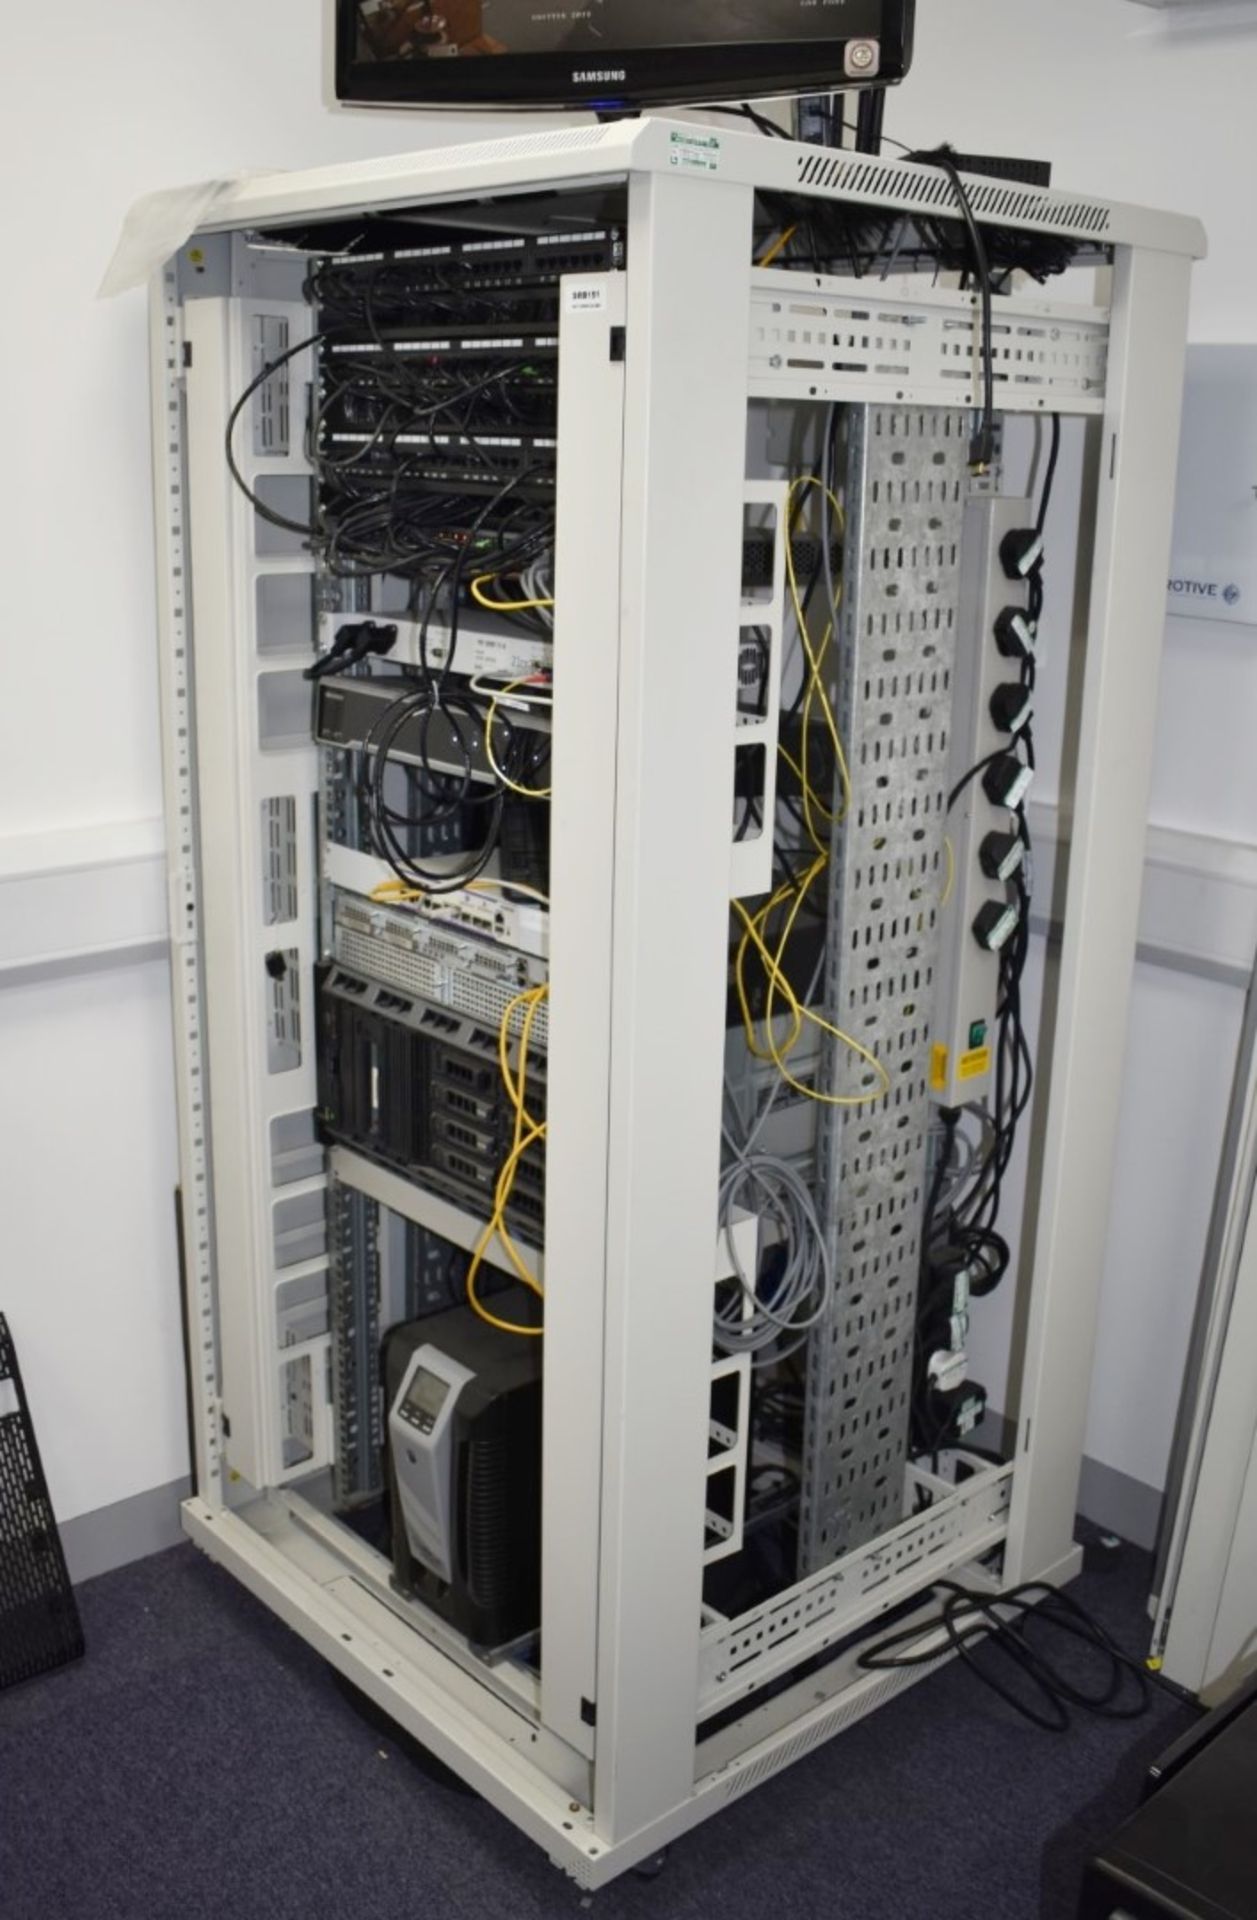 1 x Server DATA Rack Cabinet With Dell Power Edge T420 Server, Cisco 2921, Alcatel OS6250-8M, Adva